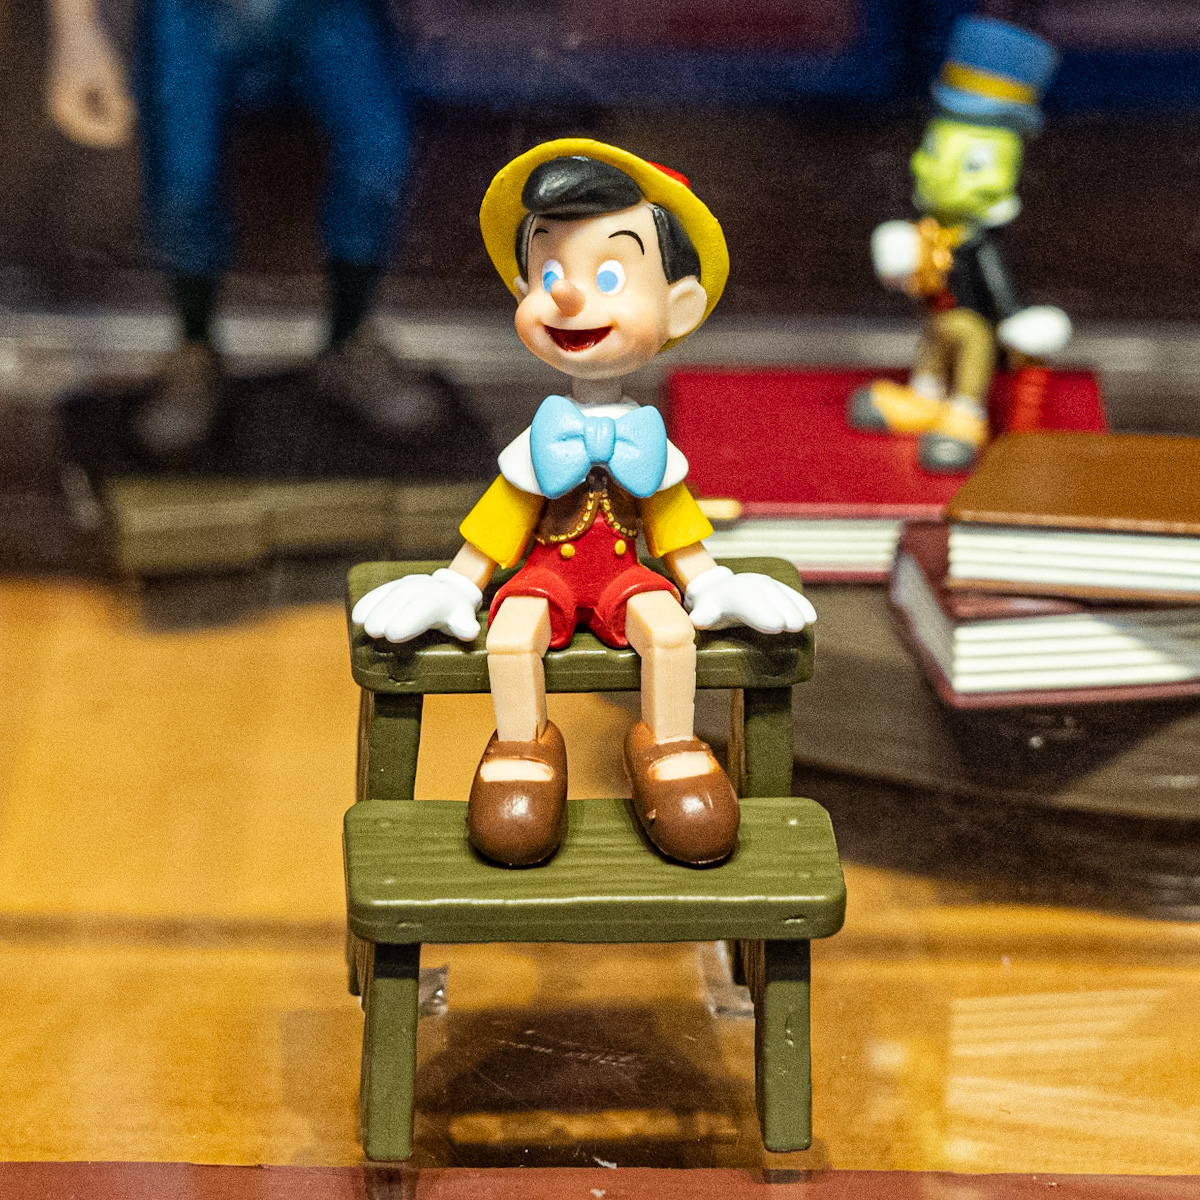 ｢ピノキオ｣ミニフィギュア